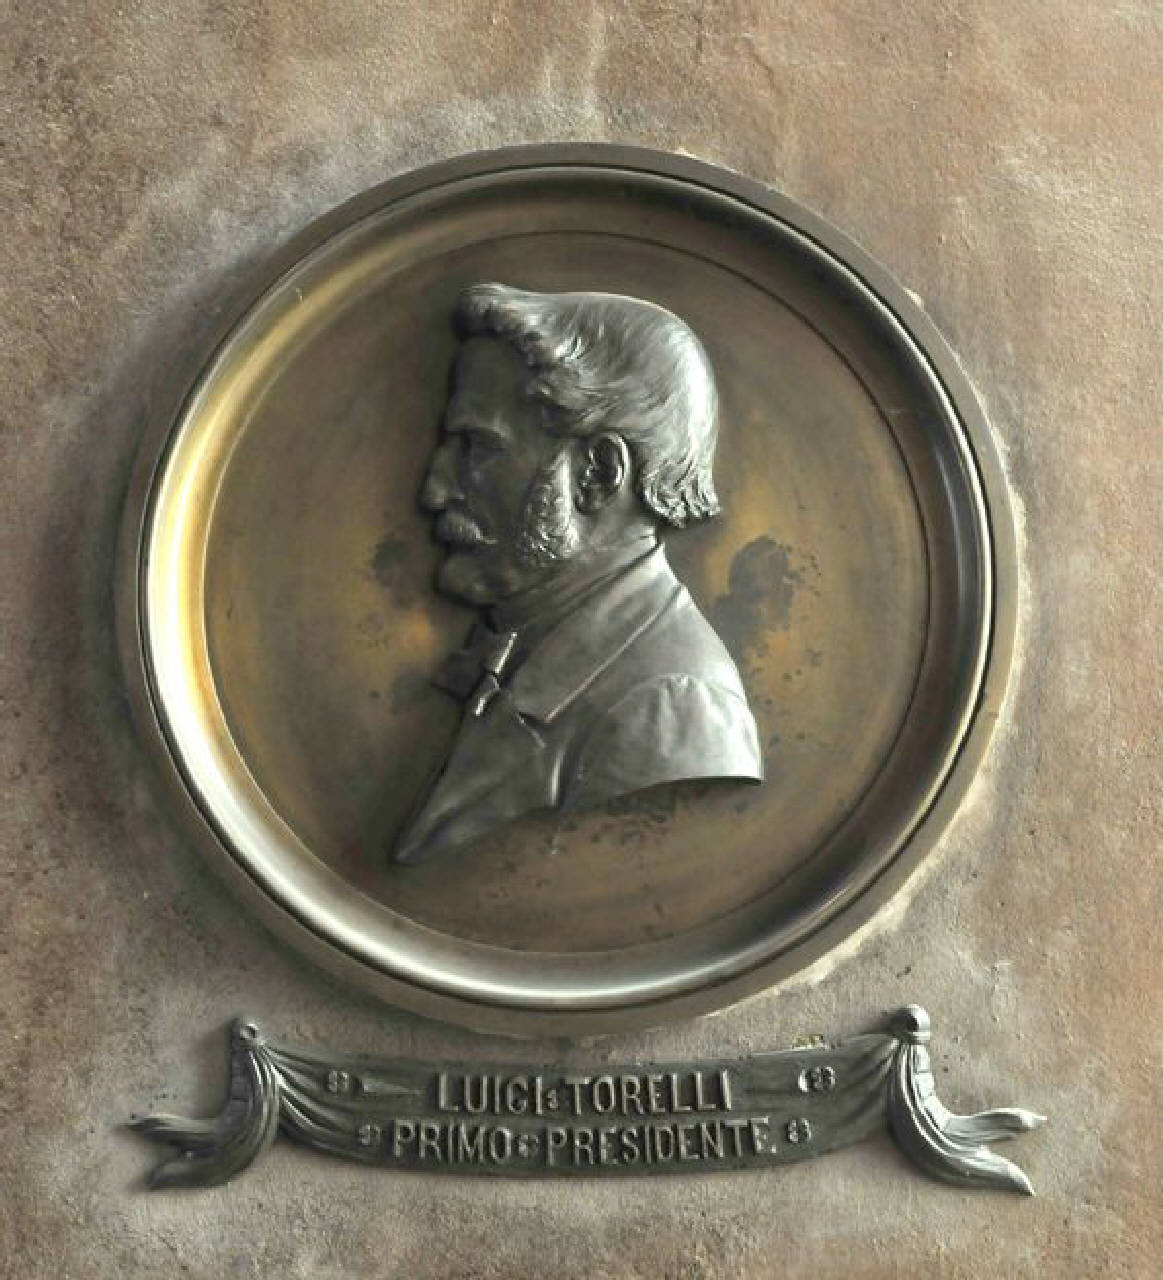 Luigi Torelli primo Presidente, Risorgimento - Celebrazione di Luigi Torelli (medaglione ornamentale) di Sanavio, Augusto (sec. XIX)